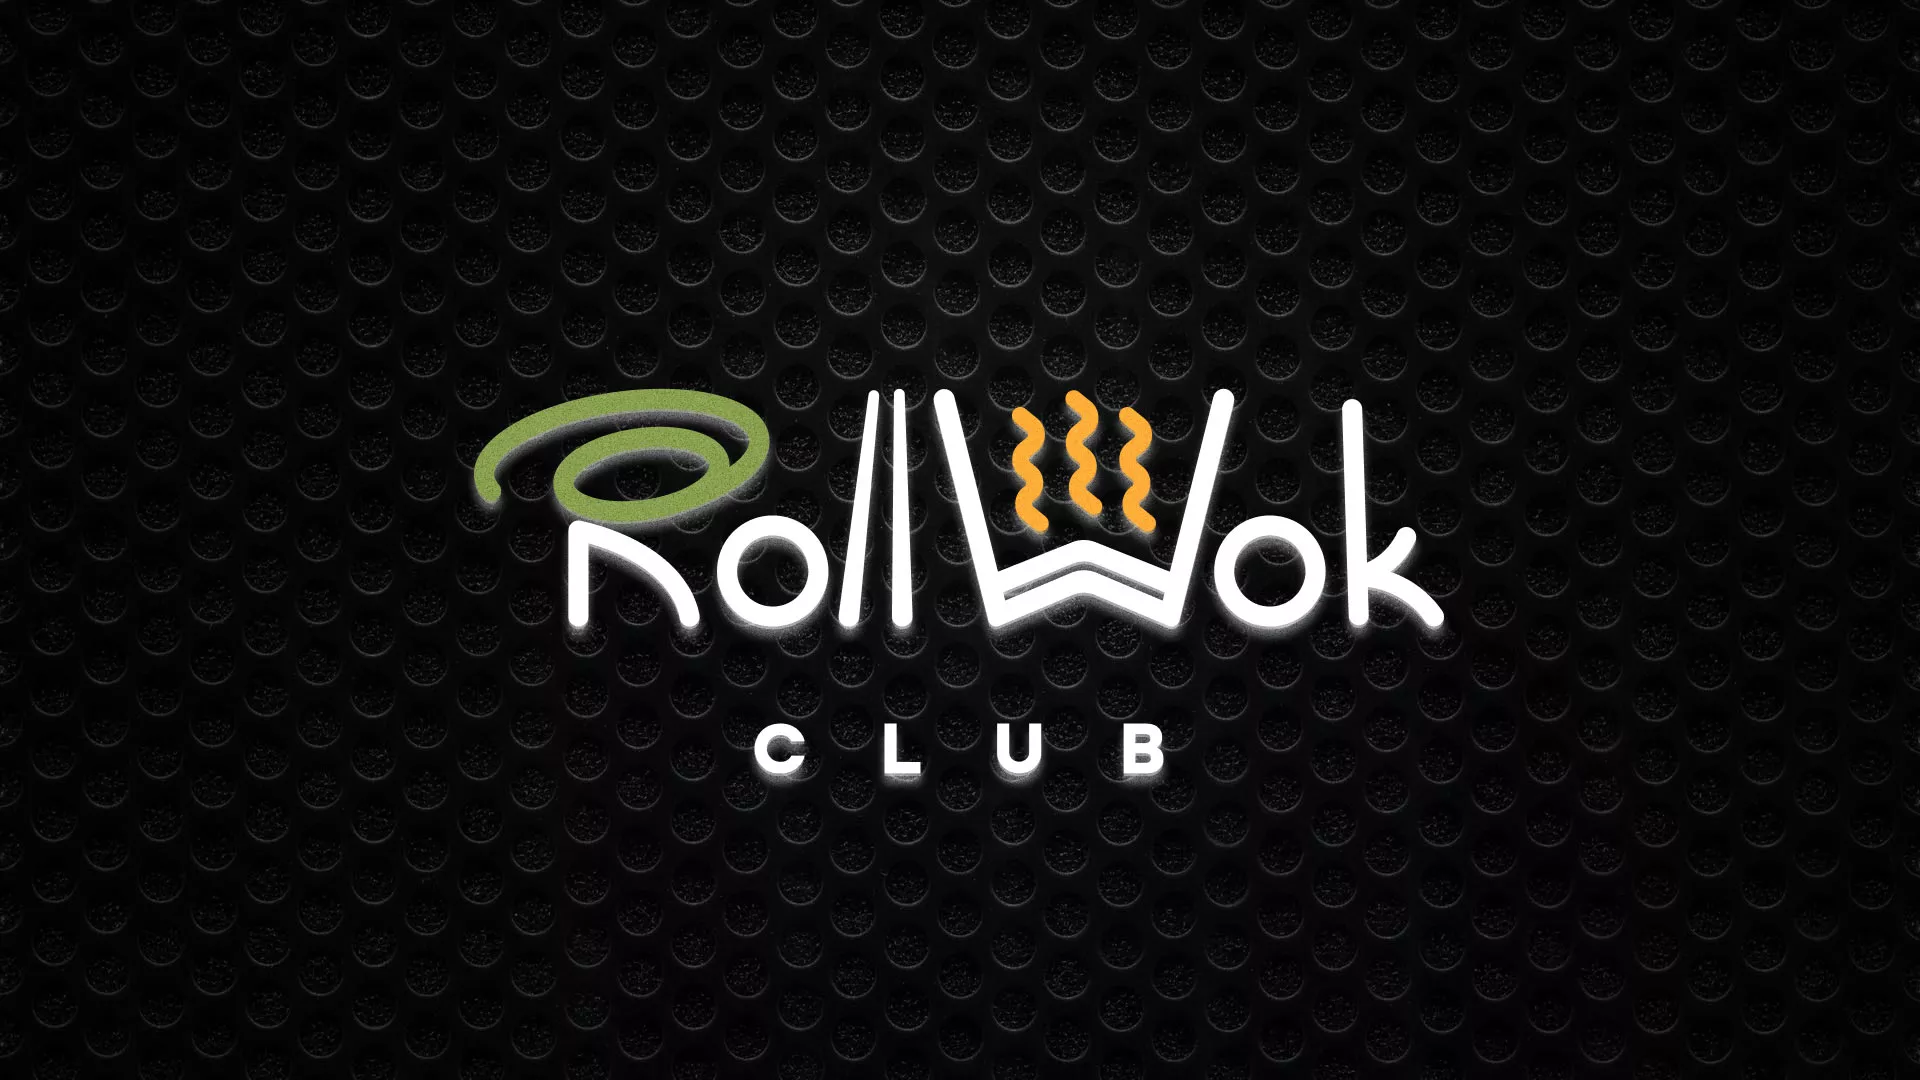 Брендирование торговых точек суши-бара «Roll Wok Club» в Меленках